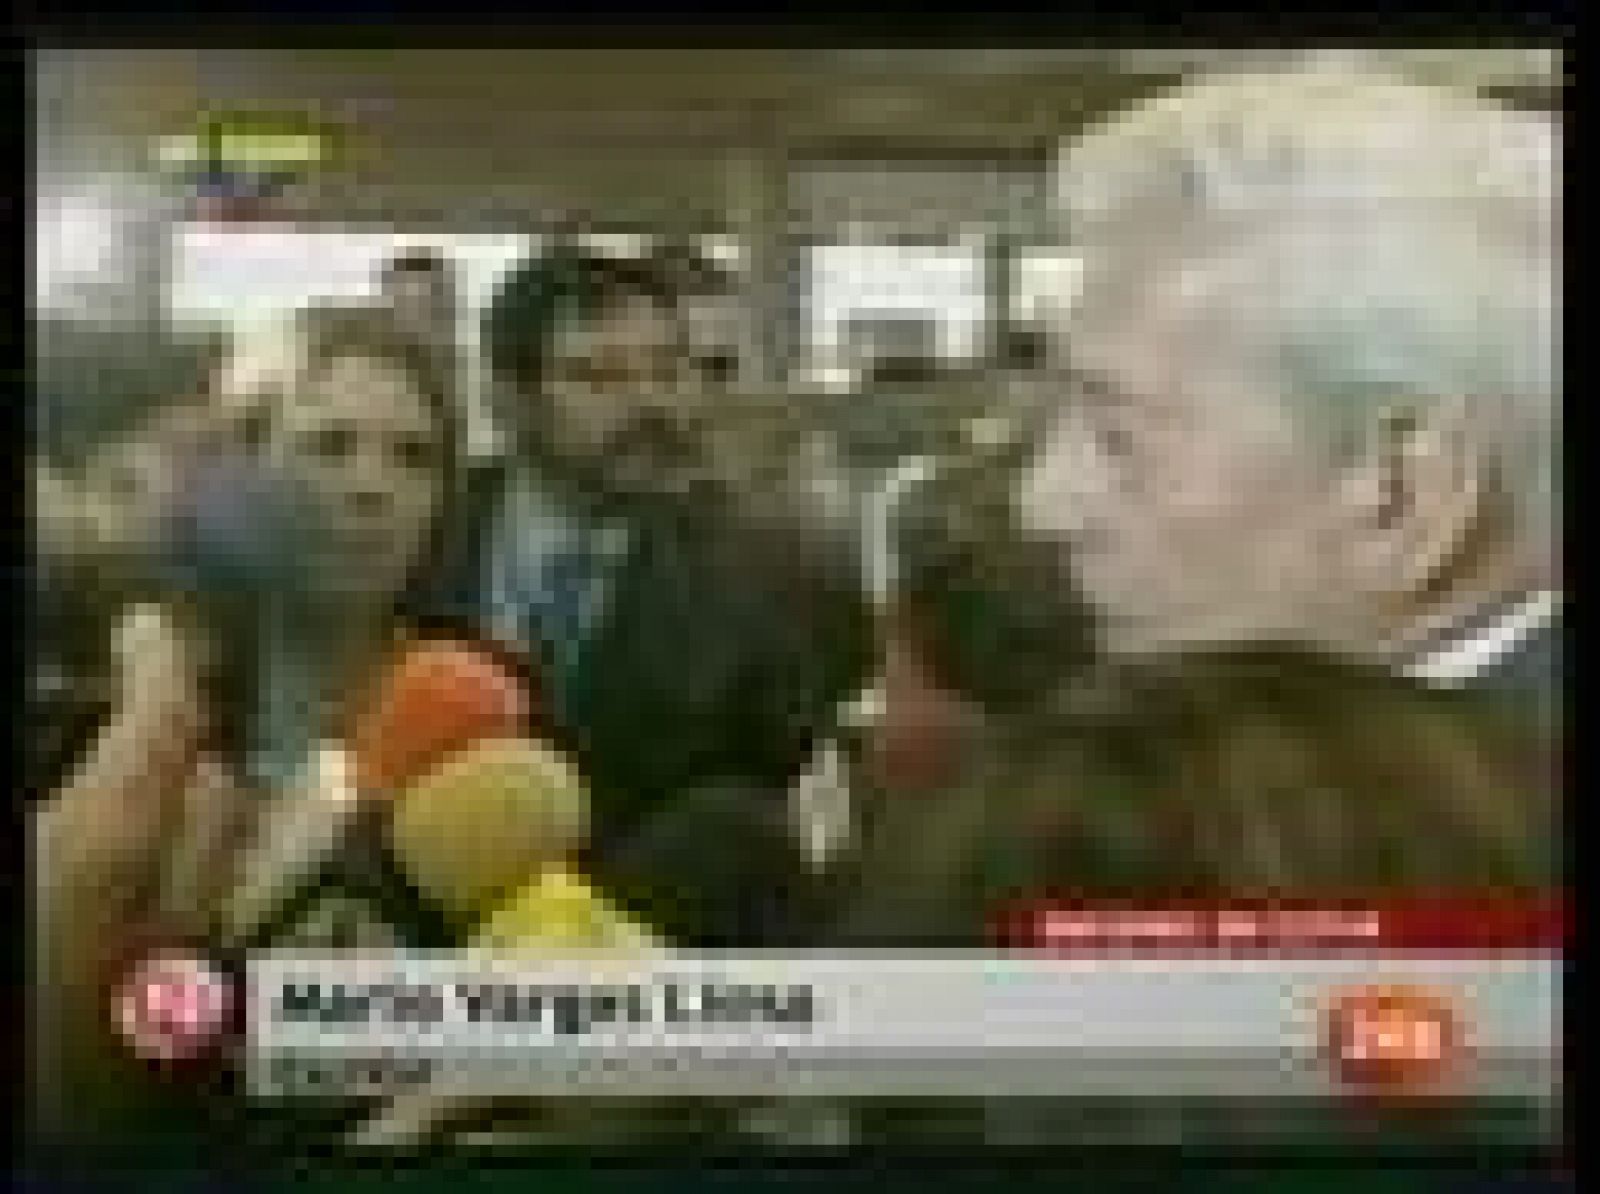 El escritor peruano Mario Vargas Llosa ha estado retenido durante 90 minutos por las autoridades aeroportuarias de Venezuela, a donde ha viajado para participar entre el jueves y el viernes en un foro sobre libertad y propiedad privada. Ha aterrizado, junto a su mujer, procedente de Colombia (27/05/09).